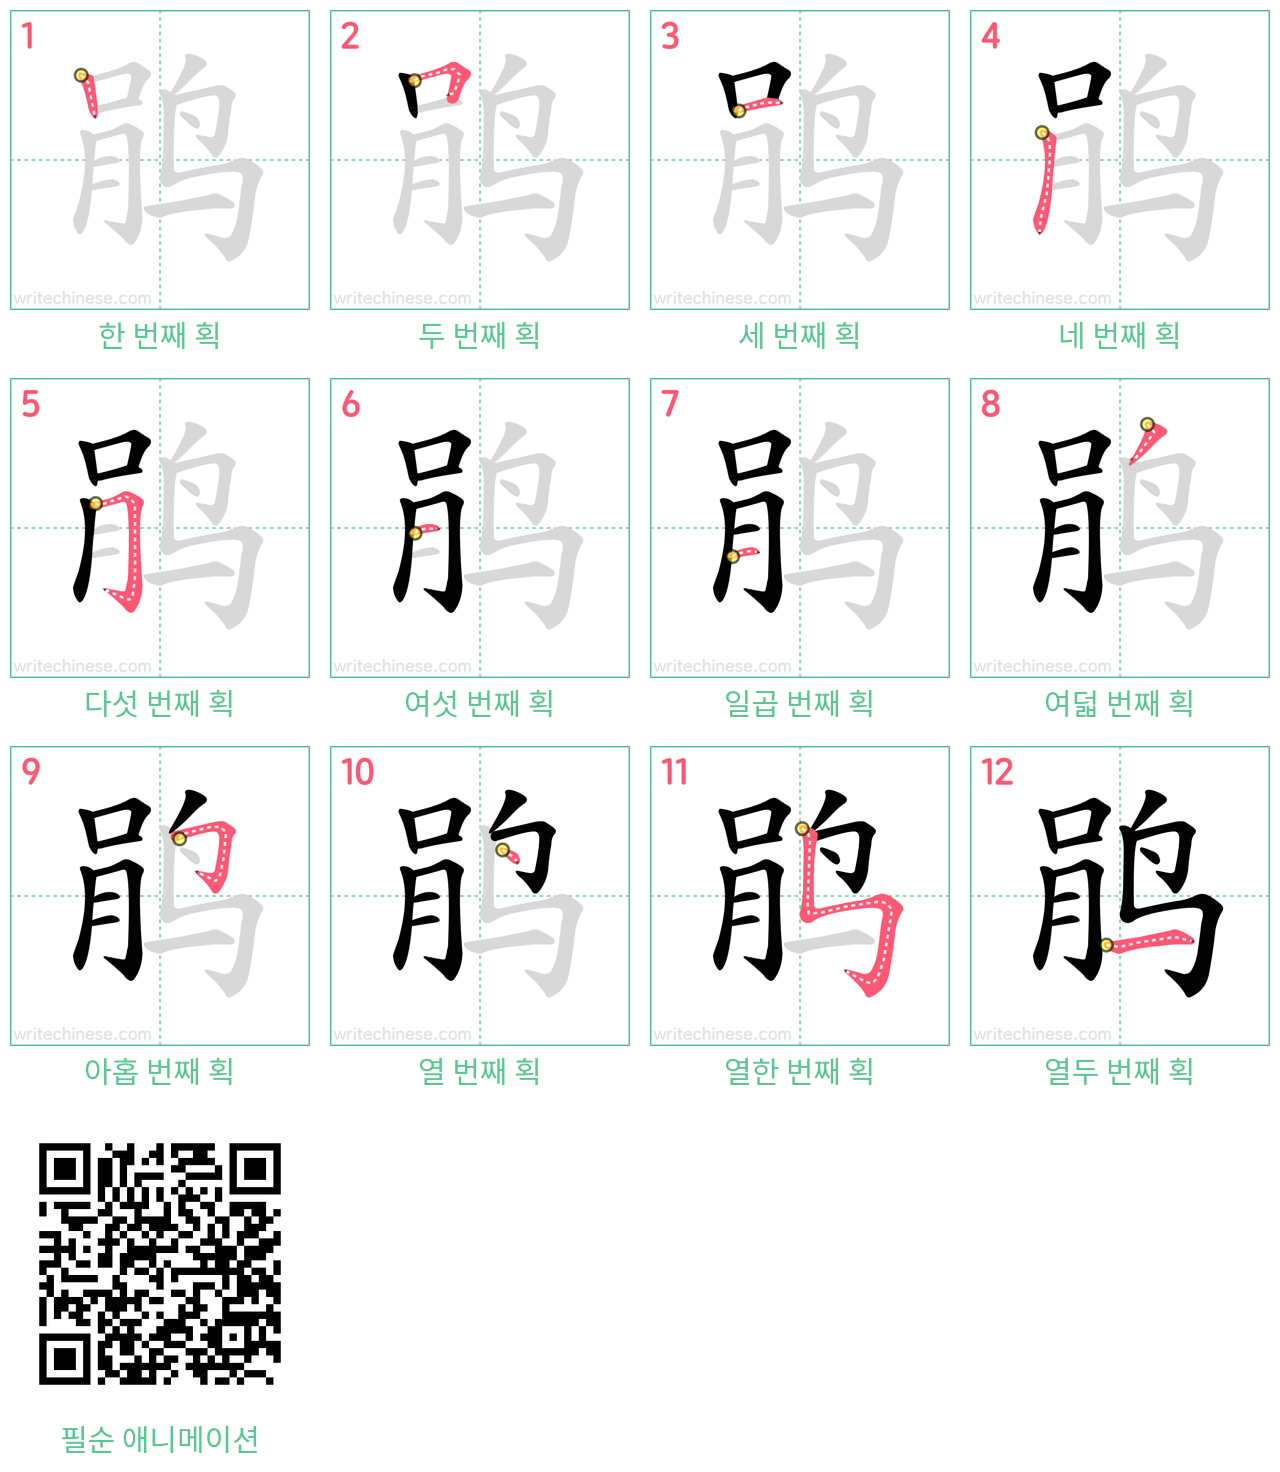 鹃 step-by-step stroke order diagrams